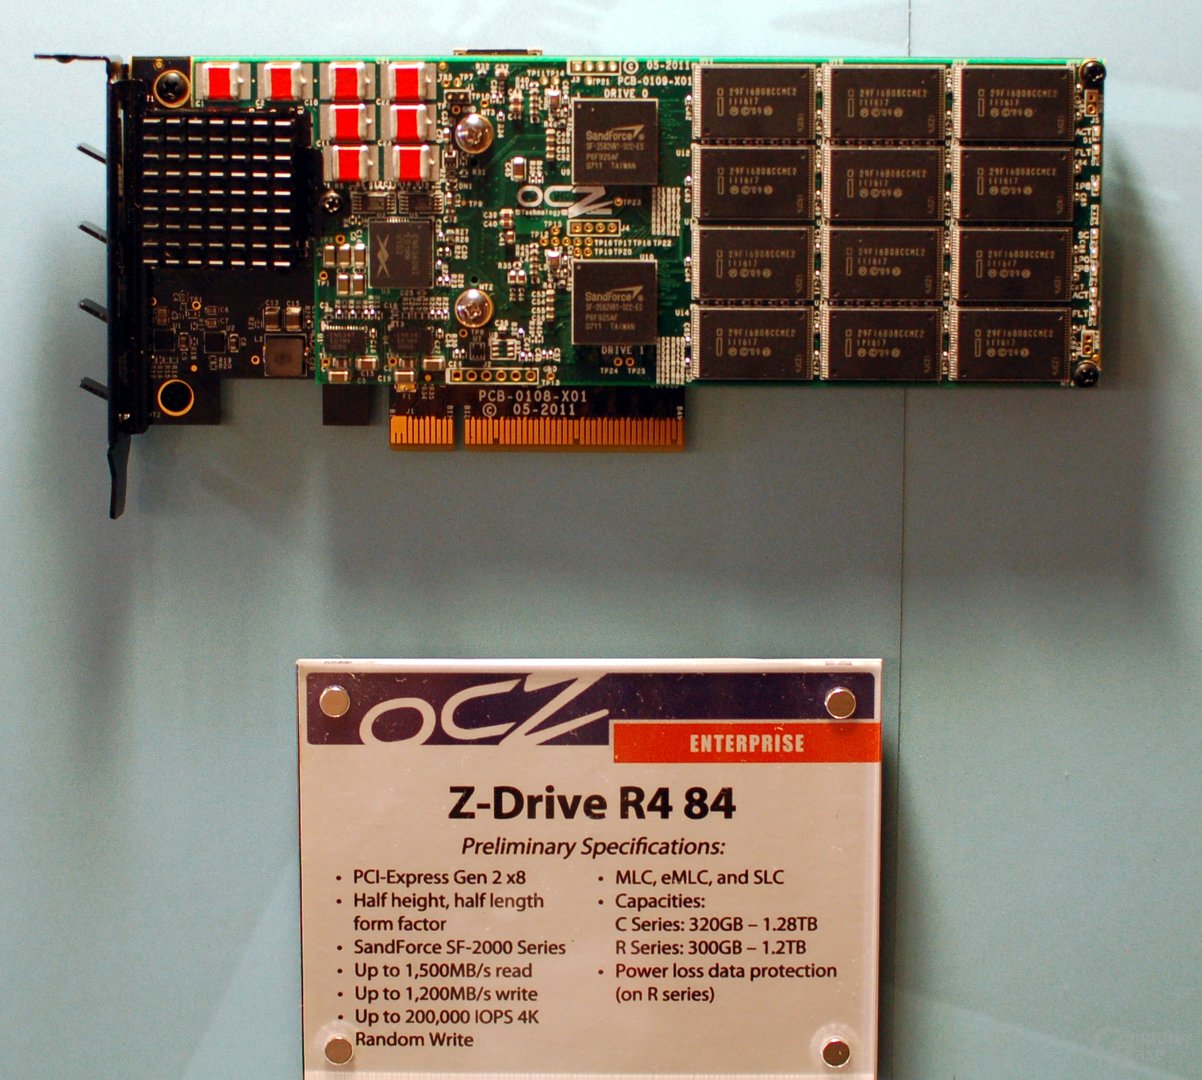 OCZ Z-Drive R4 84